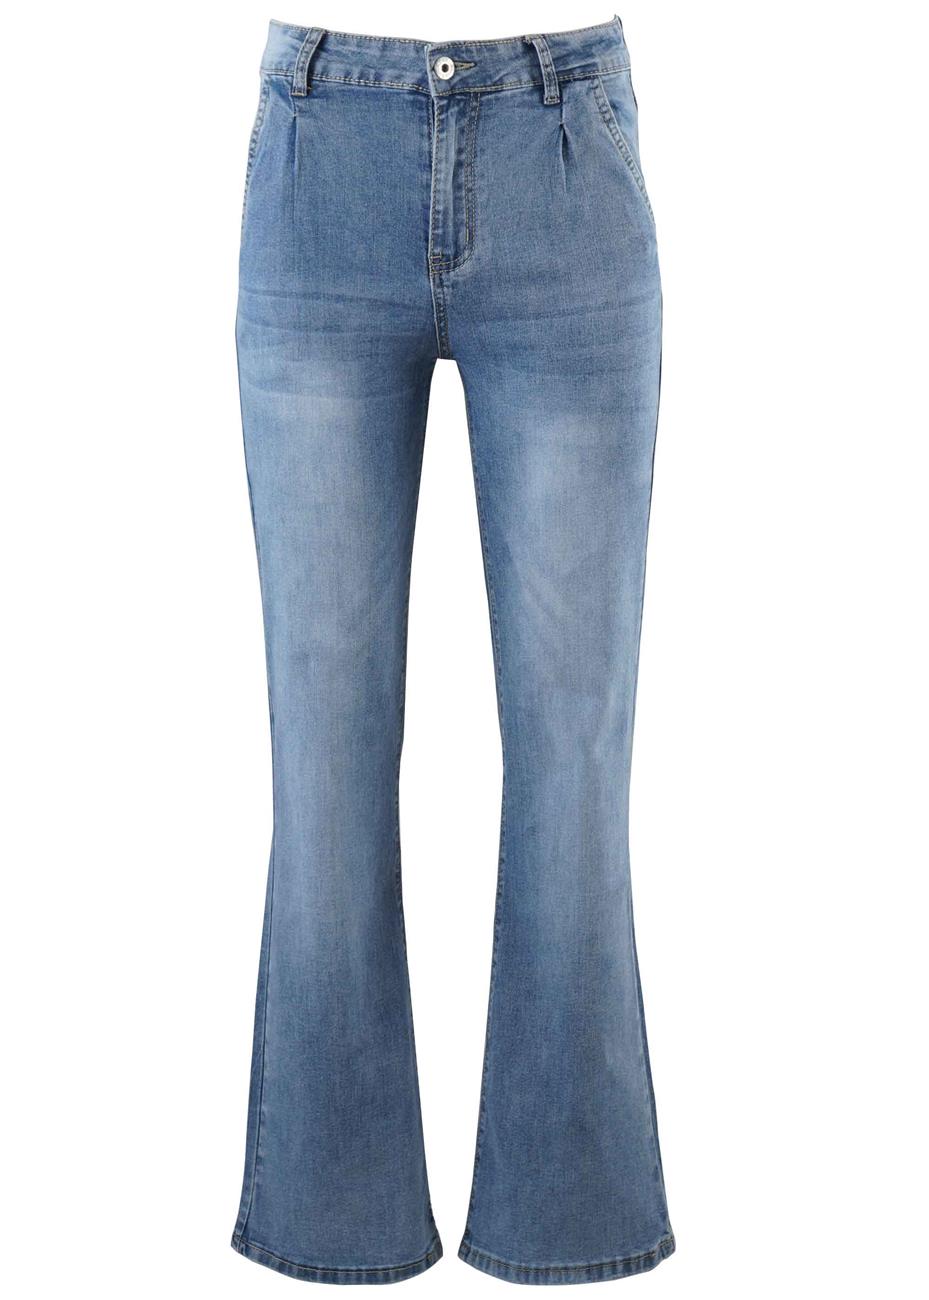 Γυναικεία ελαστική jean παντελόνα ψηλόμεση. Denim collection.